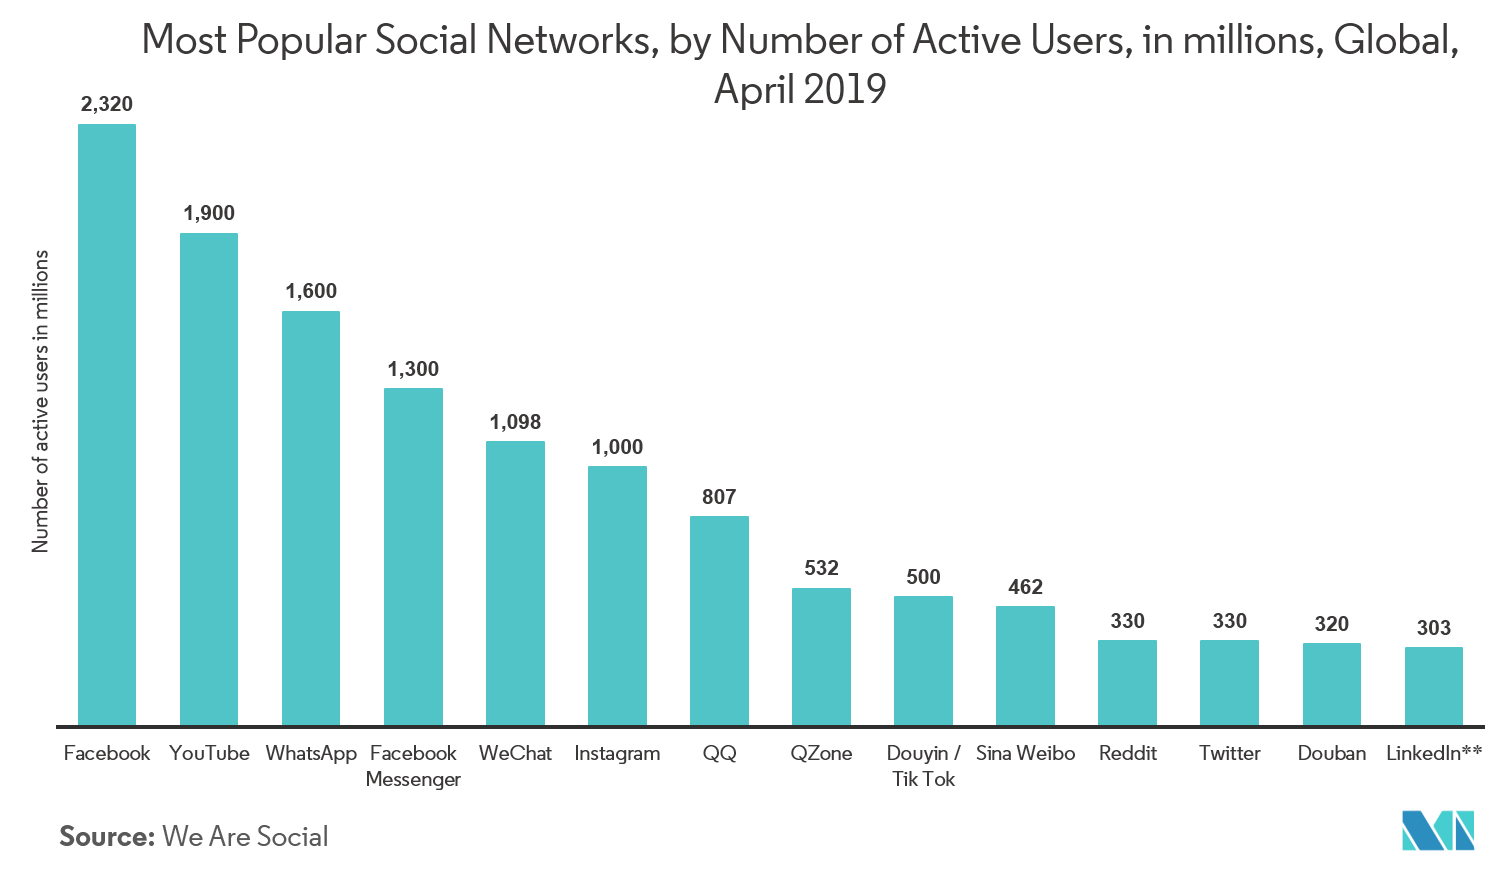 Social Media Analytics Market Report